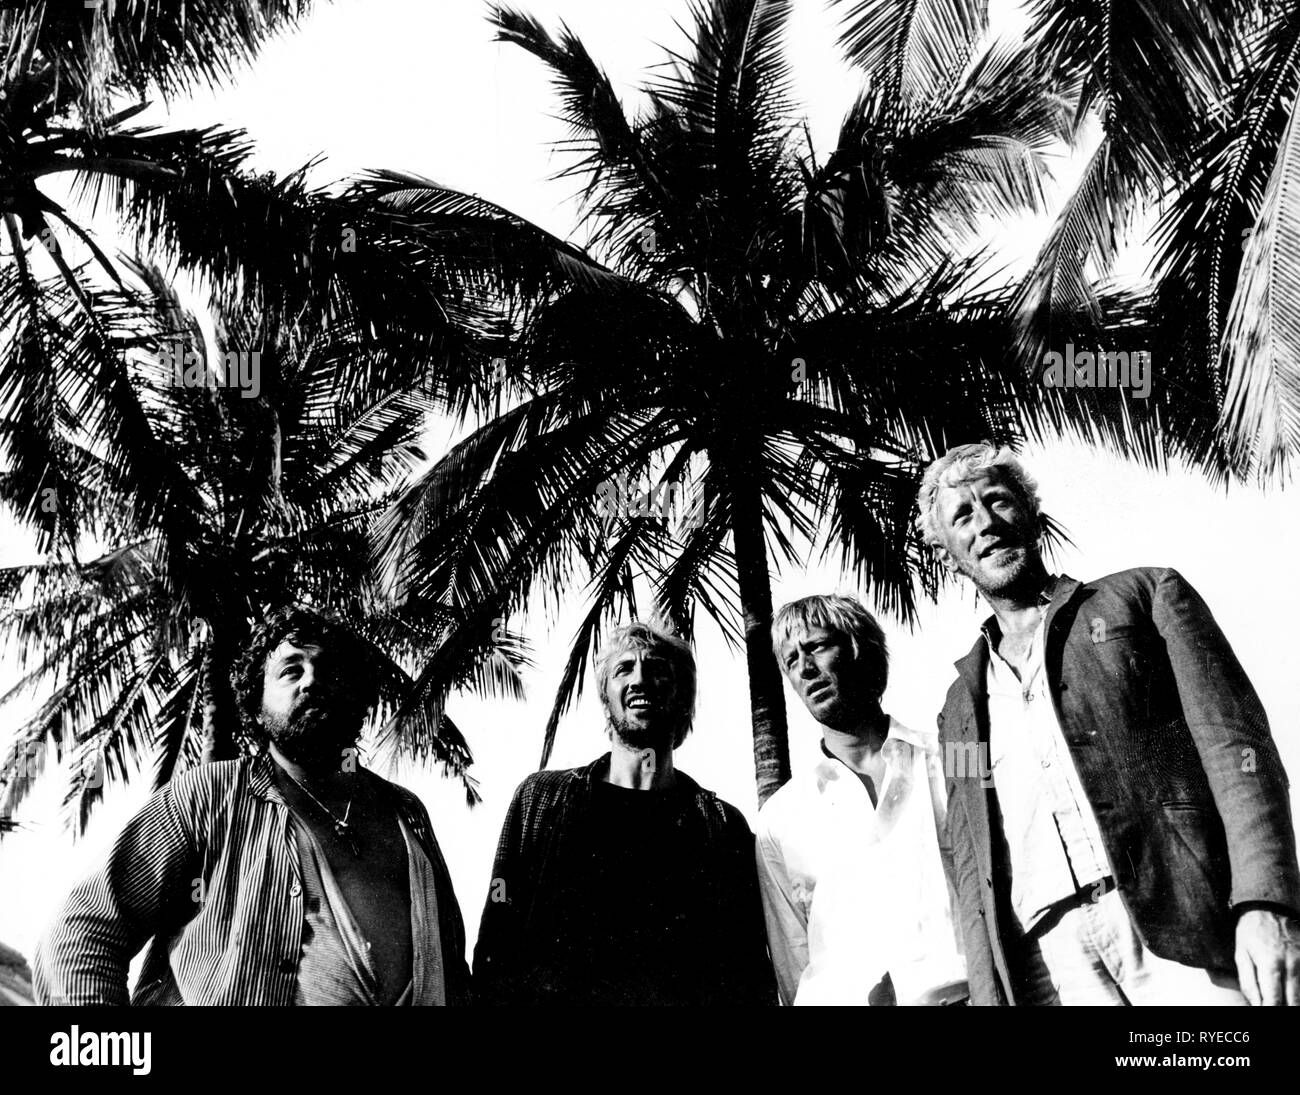 Des palmiers, svarta palmkronor, 1968 Banque D'Images